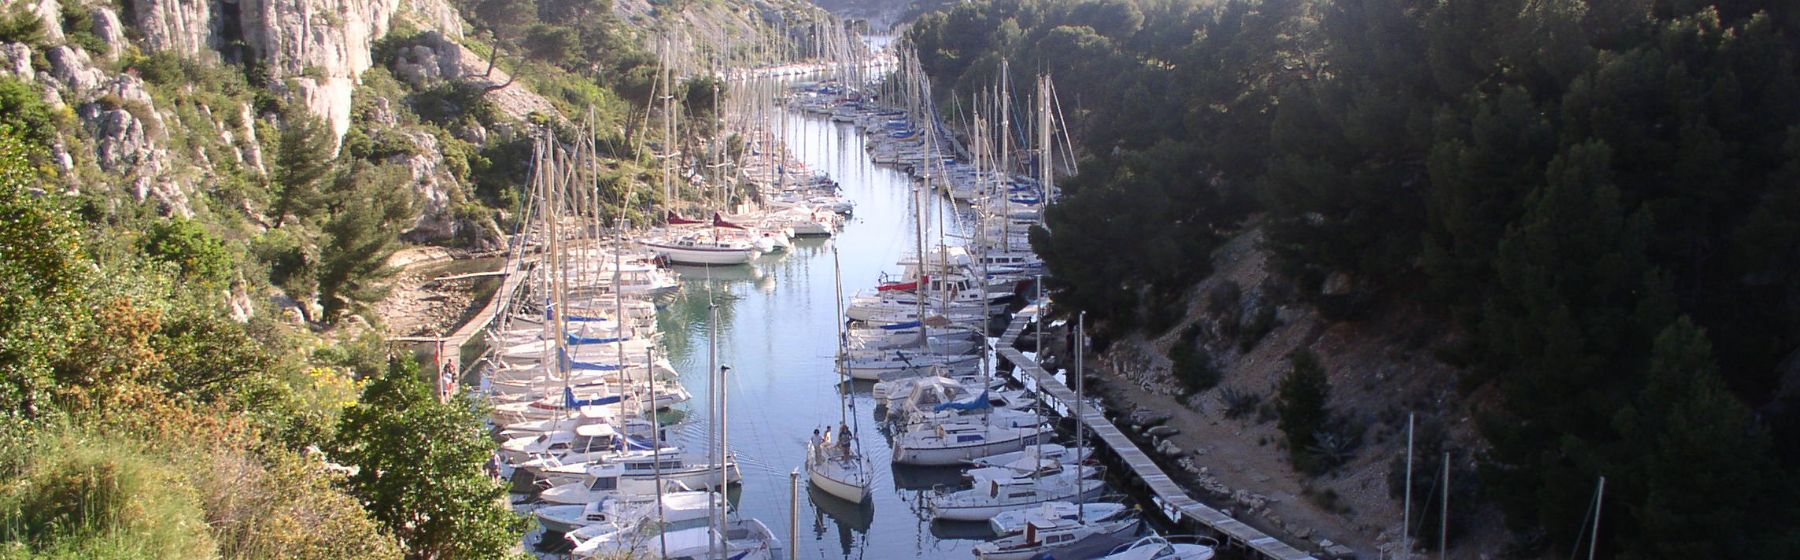 Yachting Club des Calanques de Cassis